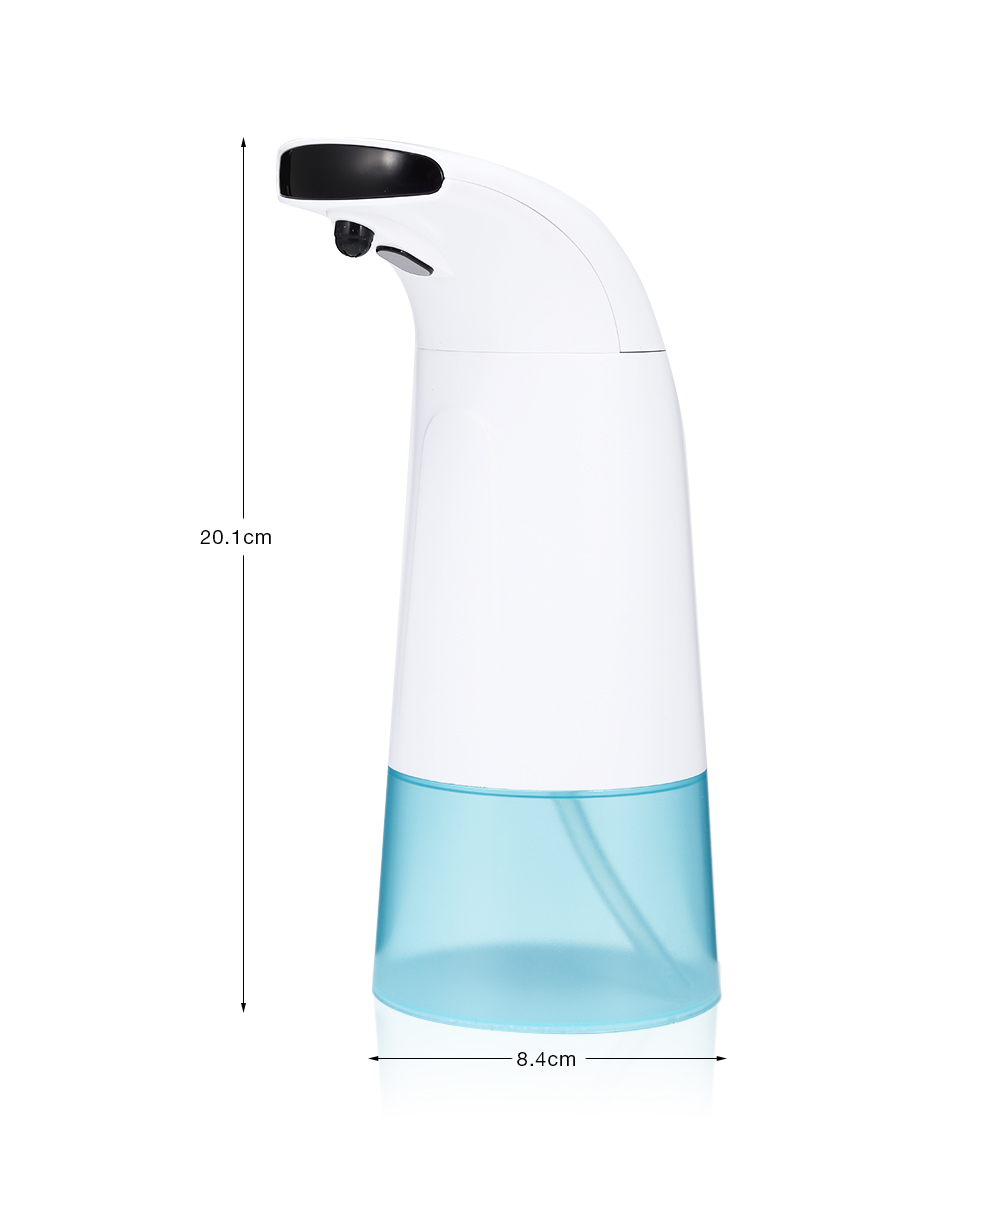 Household Infrared Sensing Automatic Soap Dispenser